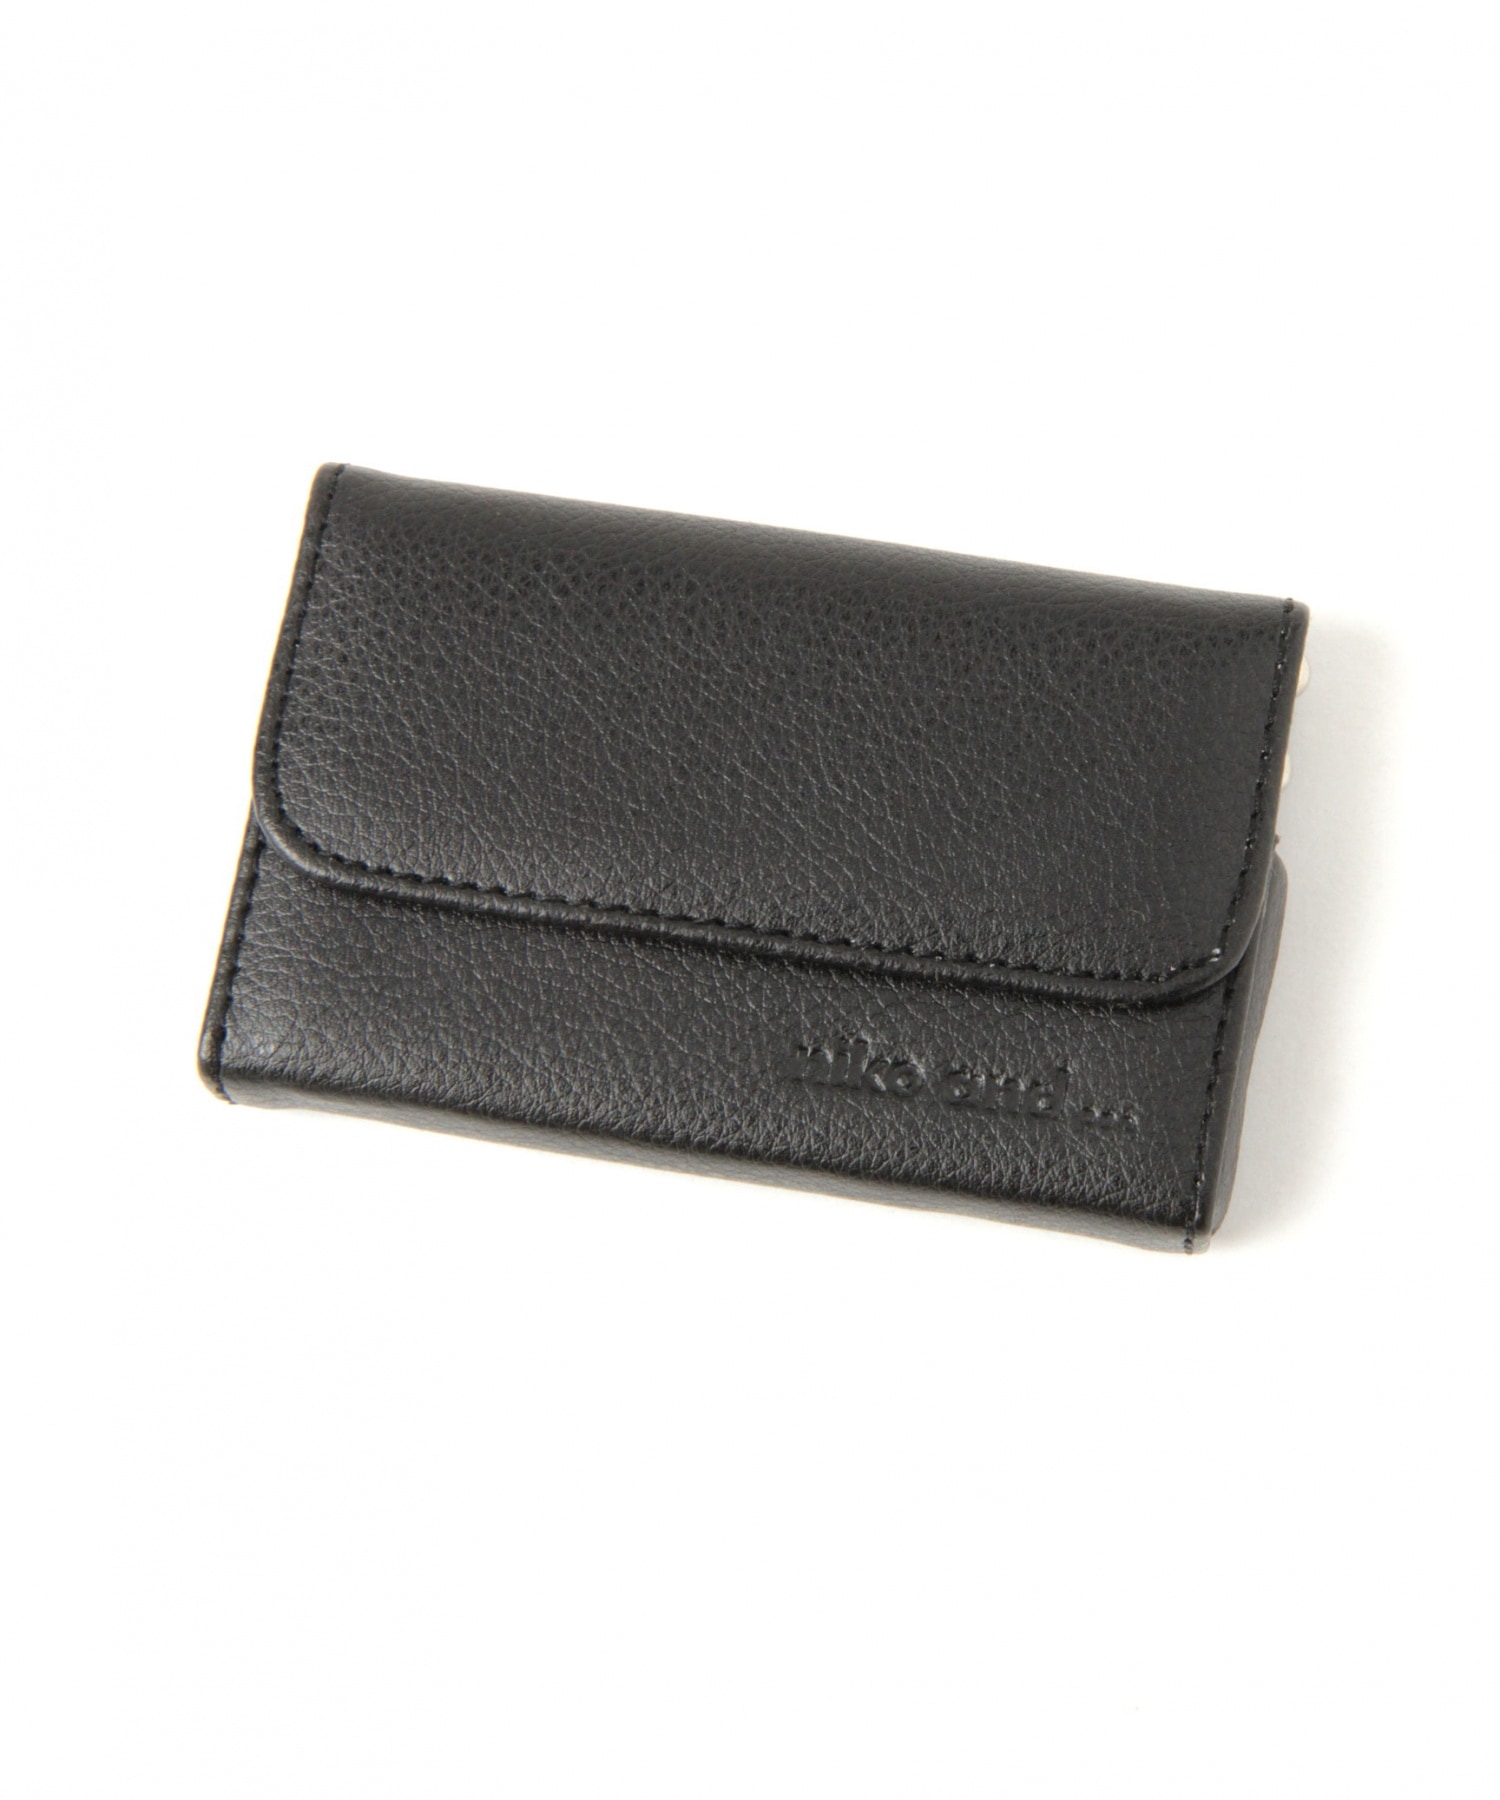 ベントレー カードケース 色は黒 サイズは縦約7.8cm 横9.8cm - 小物